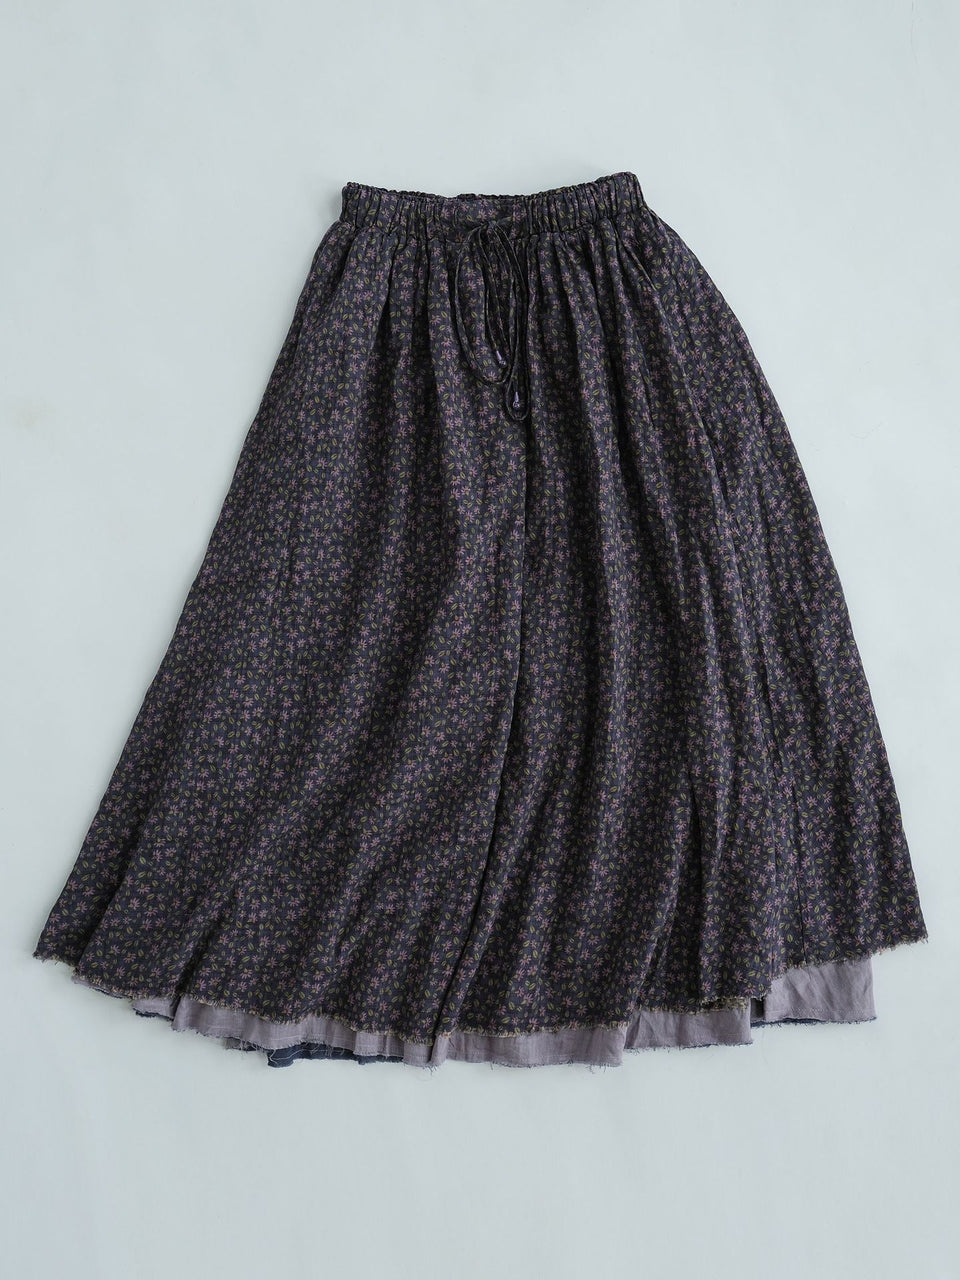 Original vintage art purple floral big swing double layer cotton skirt